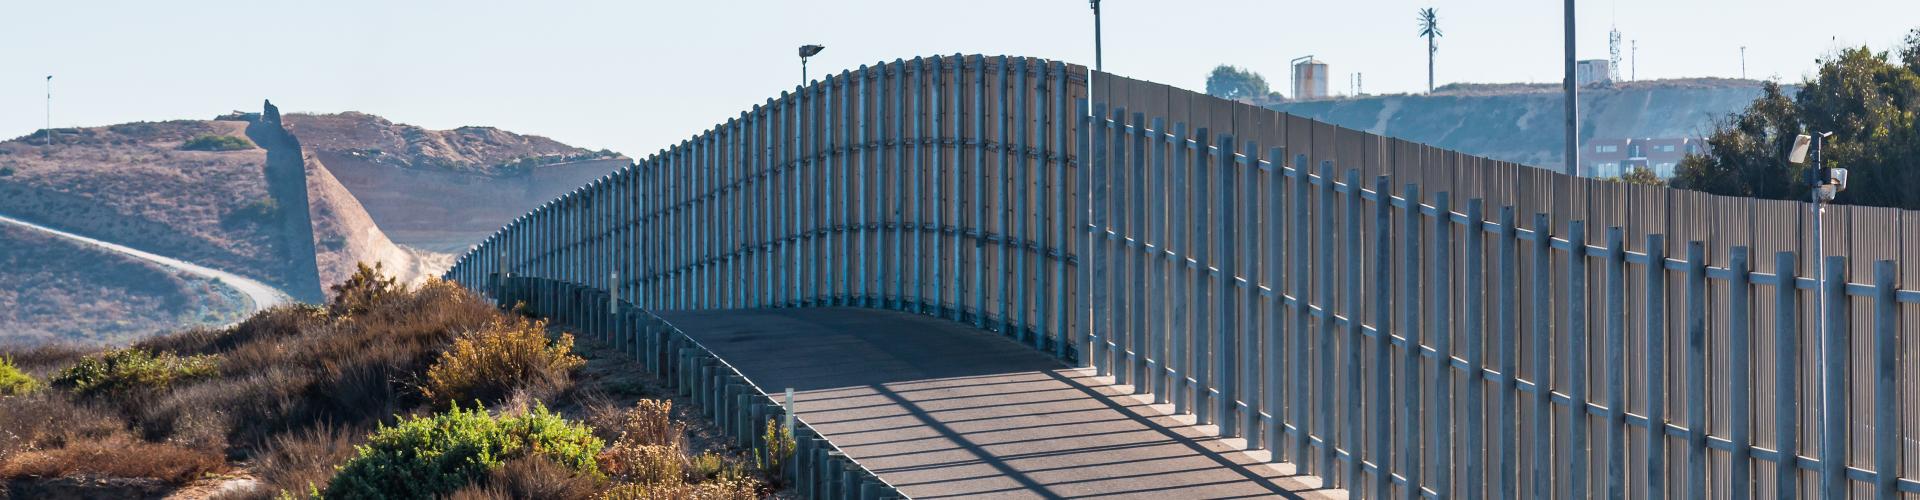 Border protection at wall